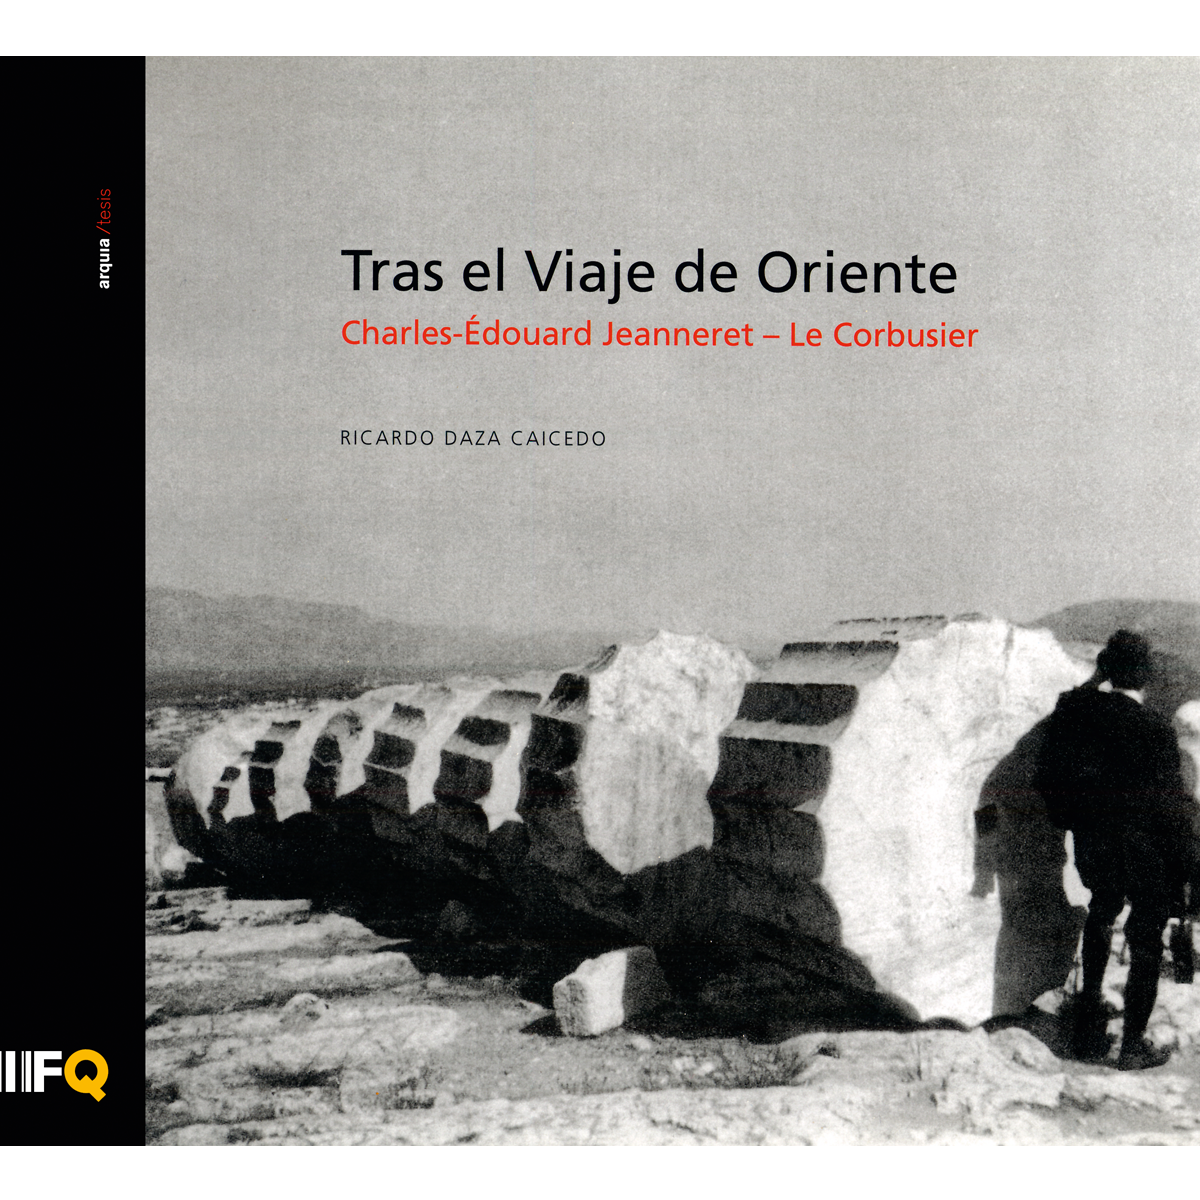 Tras el Viaje de Oriente. Charles-Édouard Jeanneret - Le Corbusier